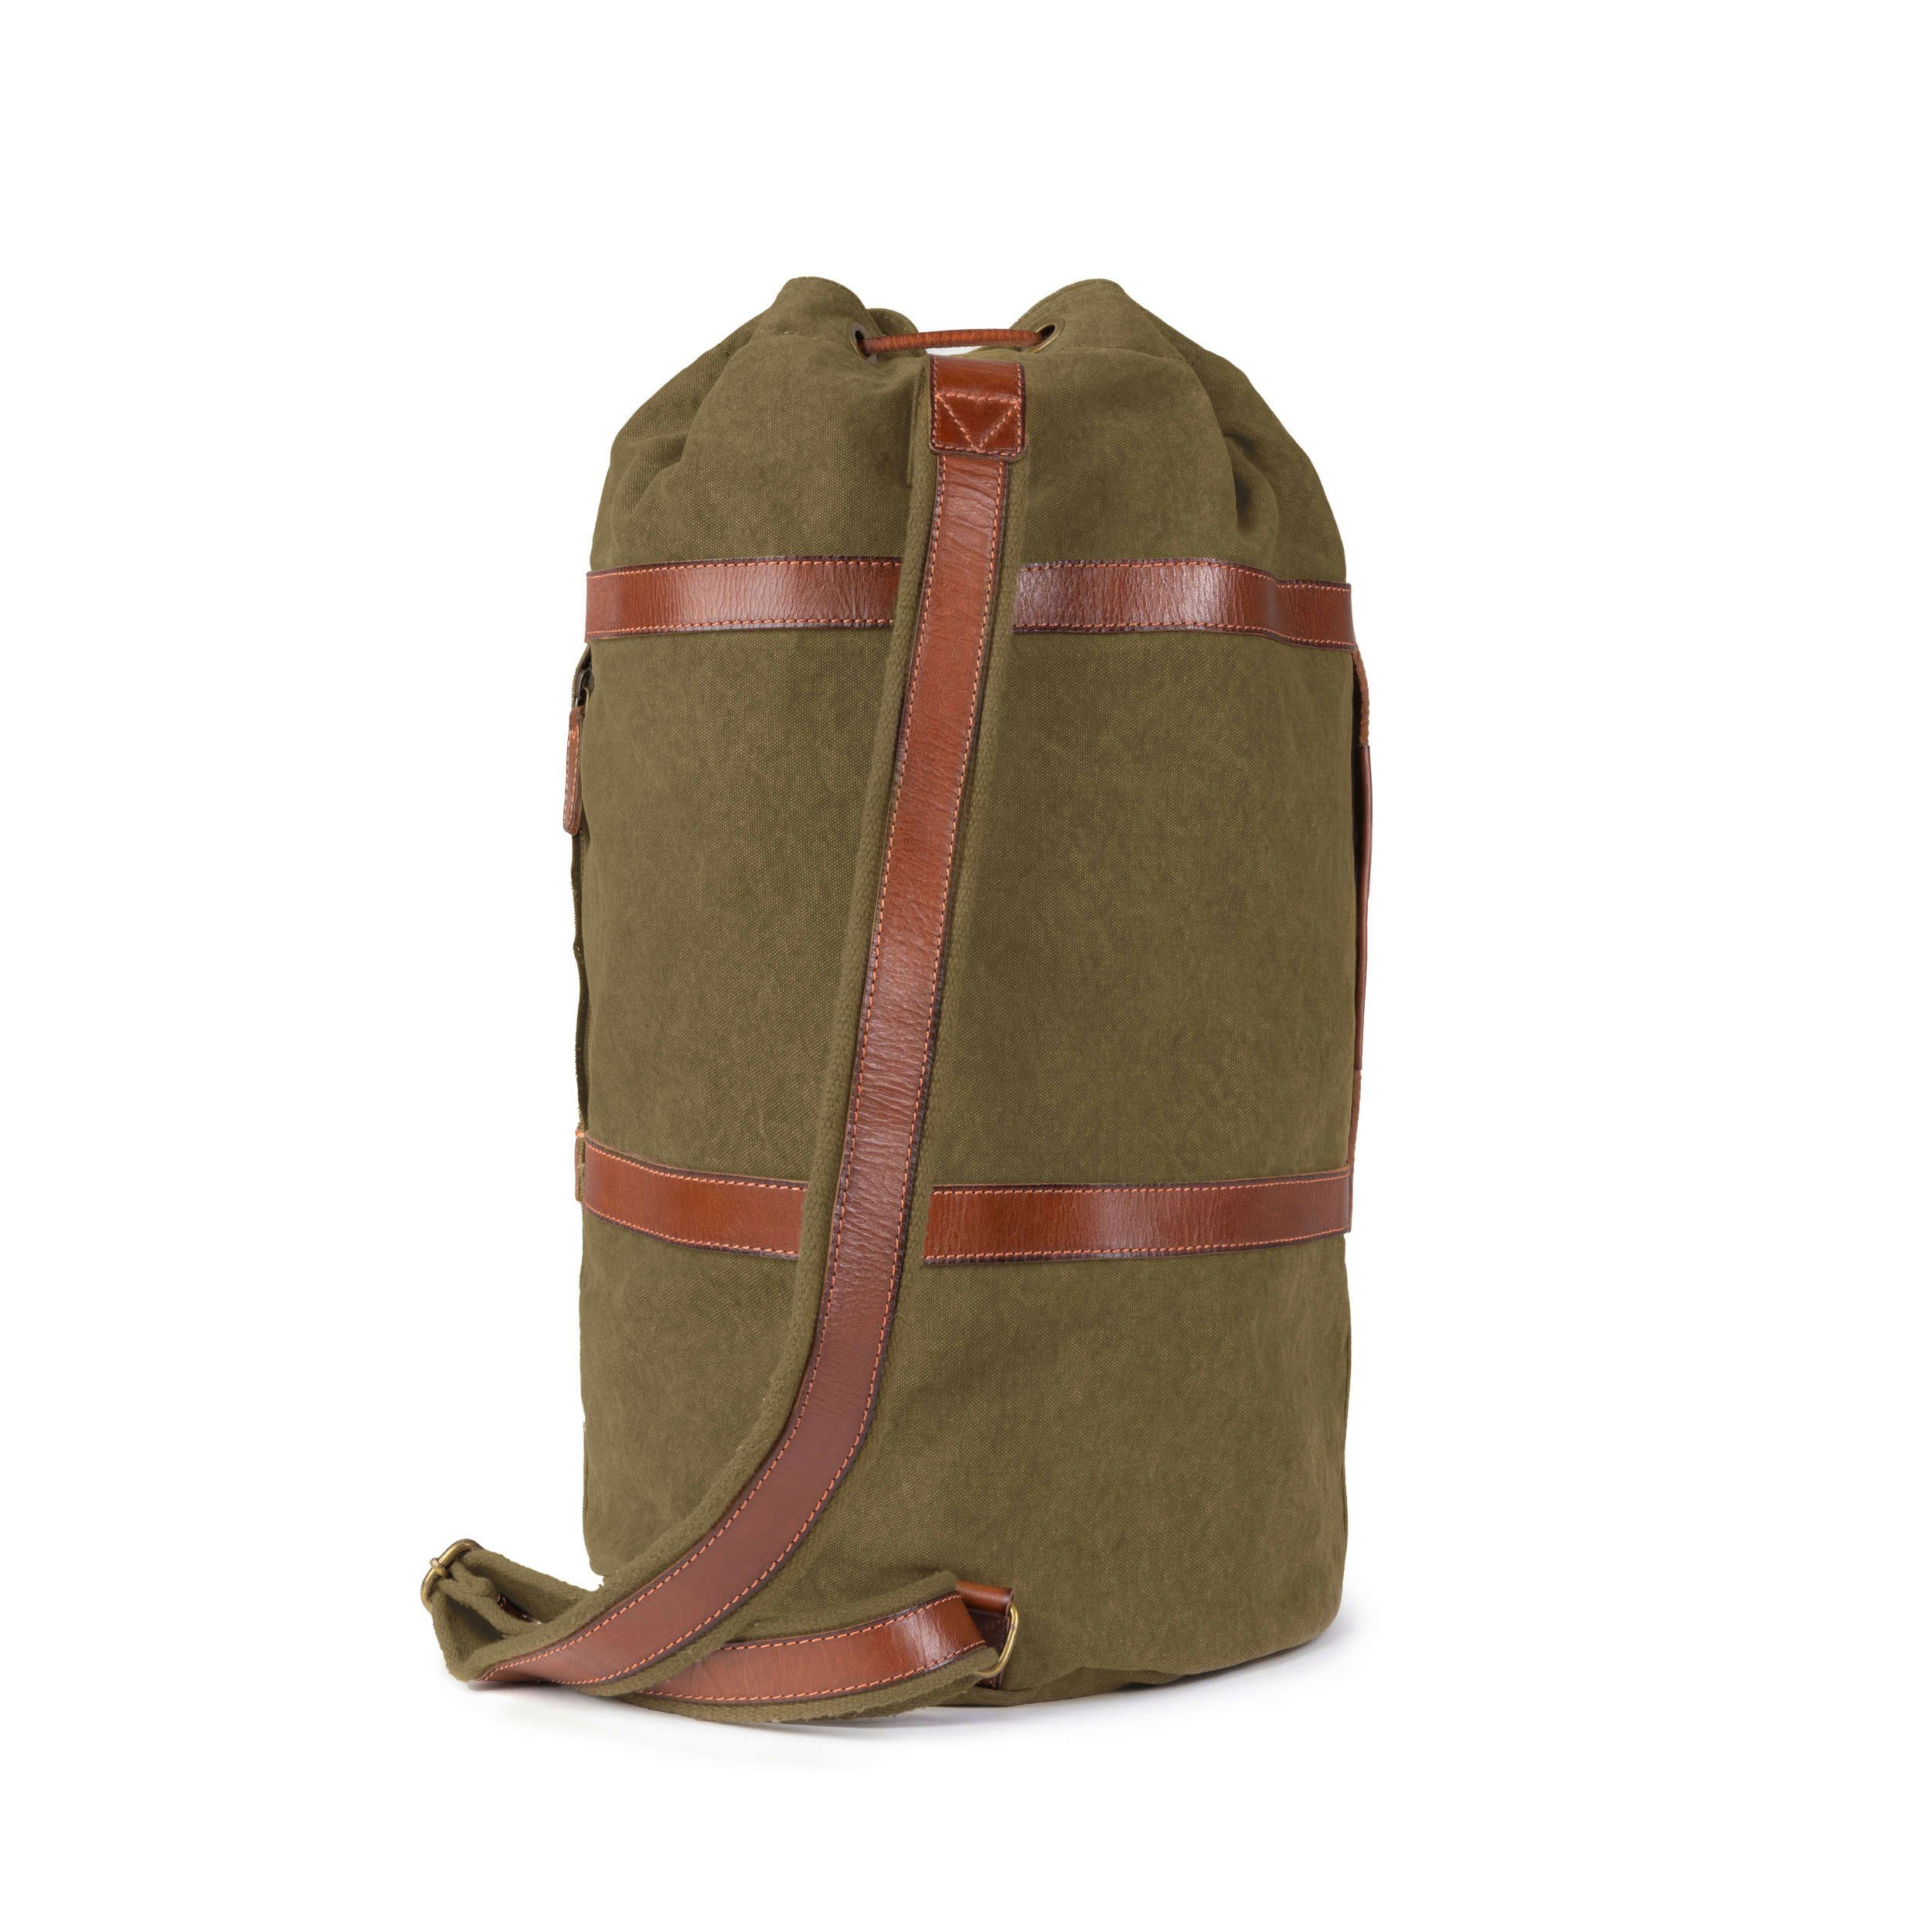 (M) »Robin« DRAKENSBERG aus kleine Reisetasche Vintage Rucksack Canvas Seesack mit Leder und Oliv-Grün, Rucksackfunktion